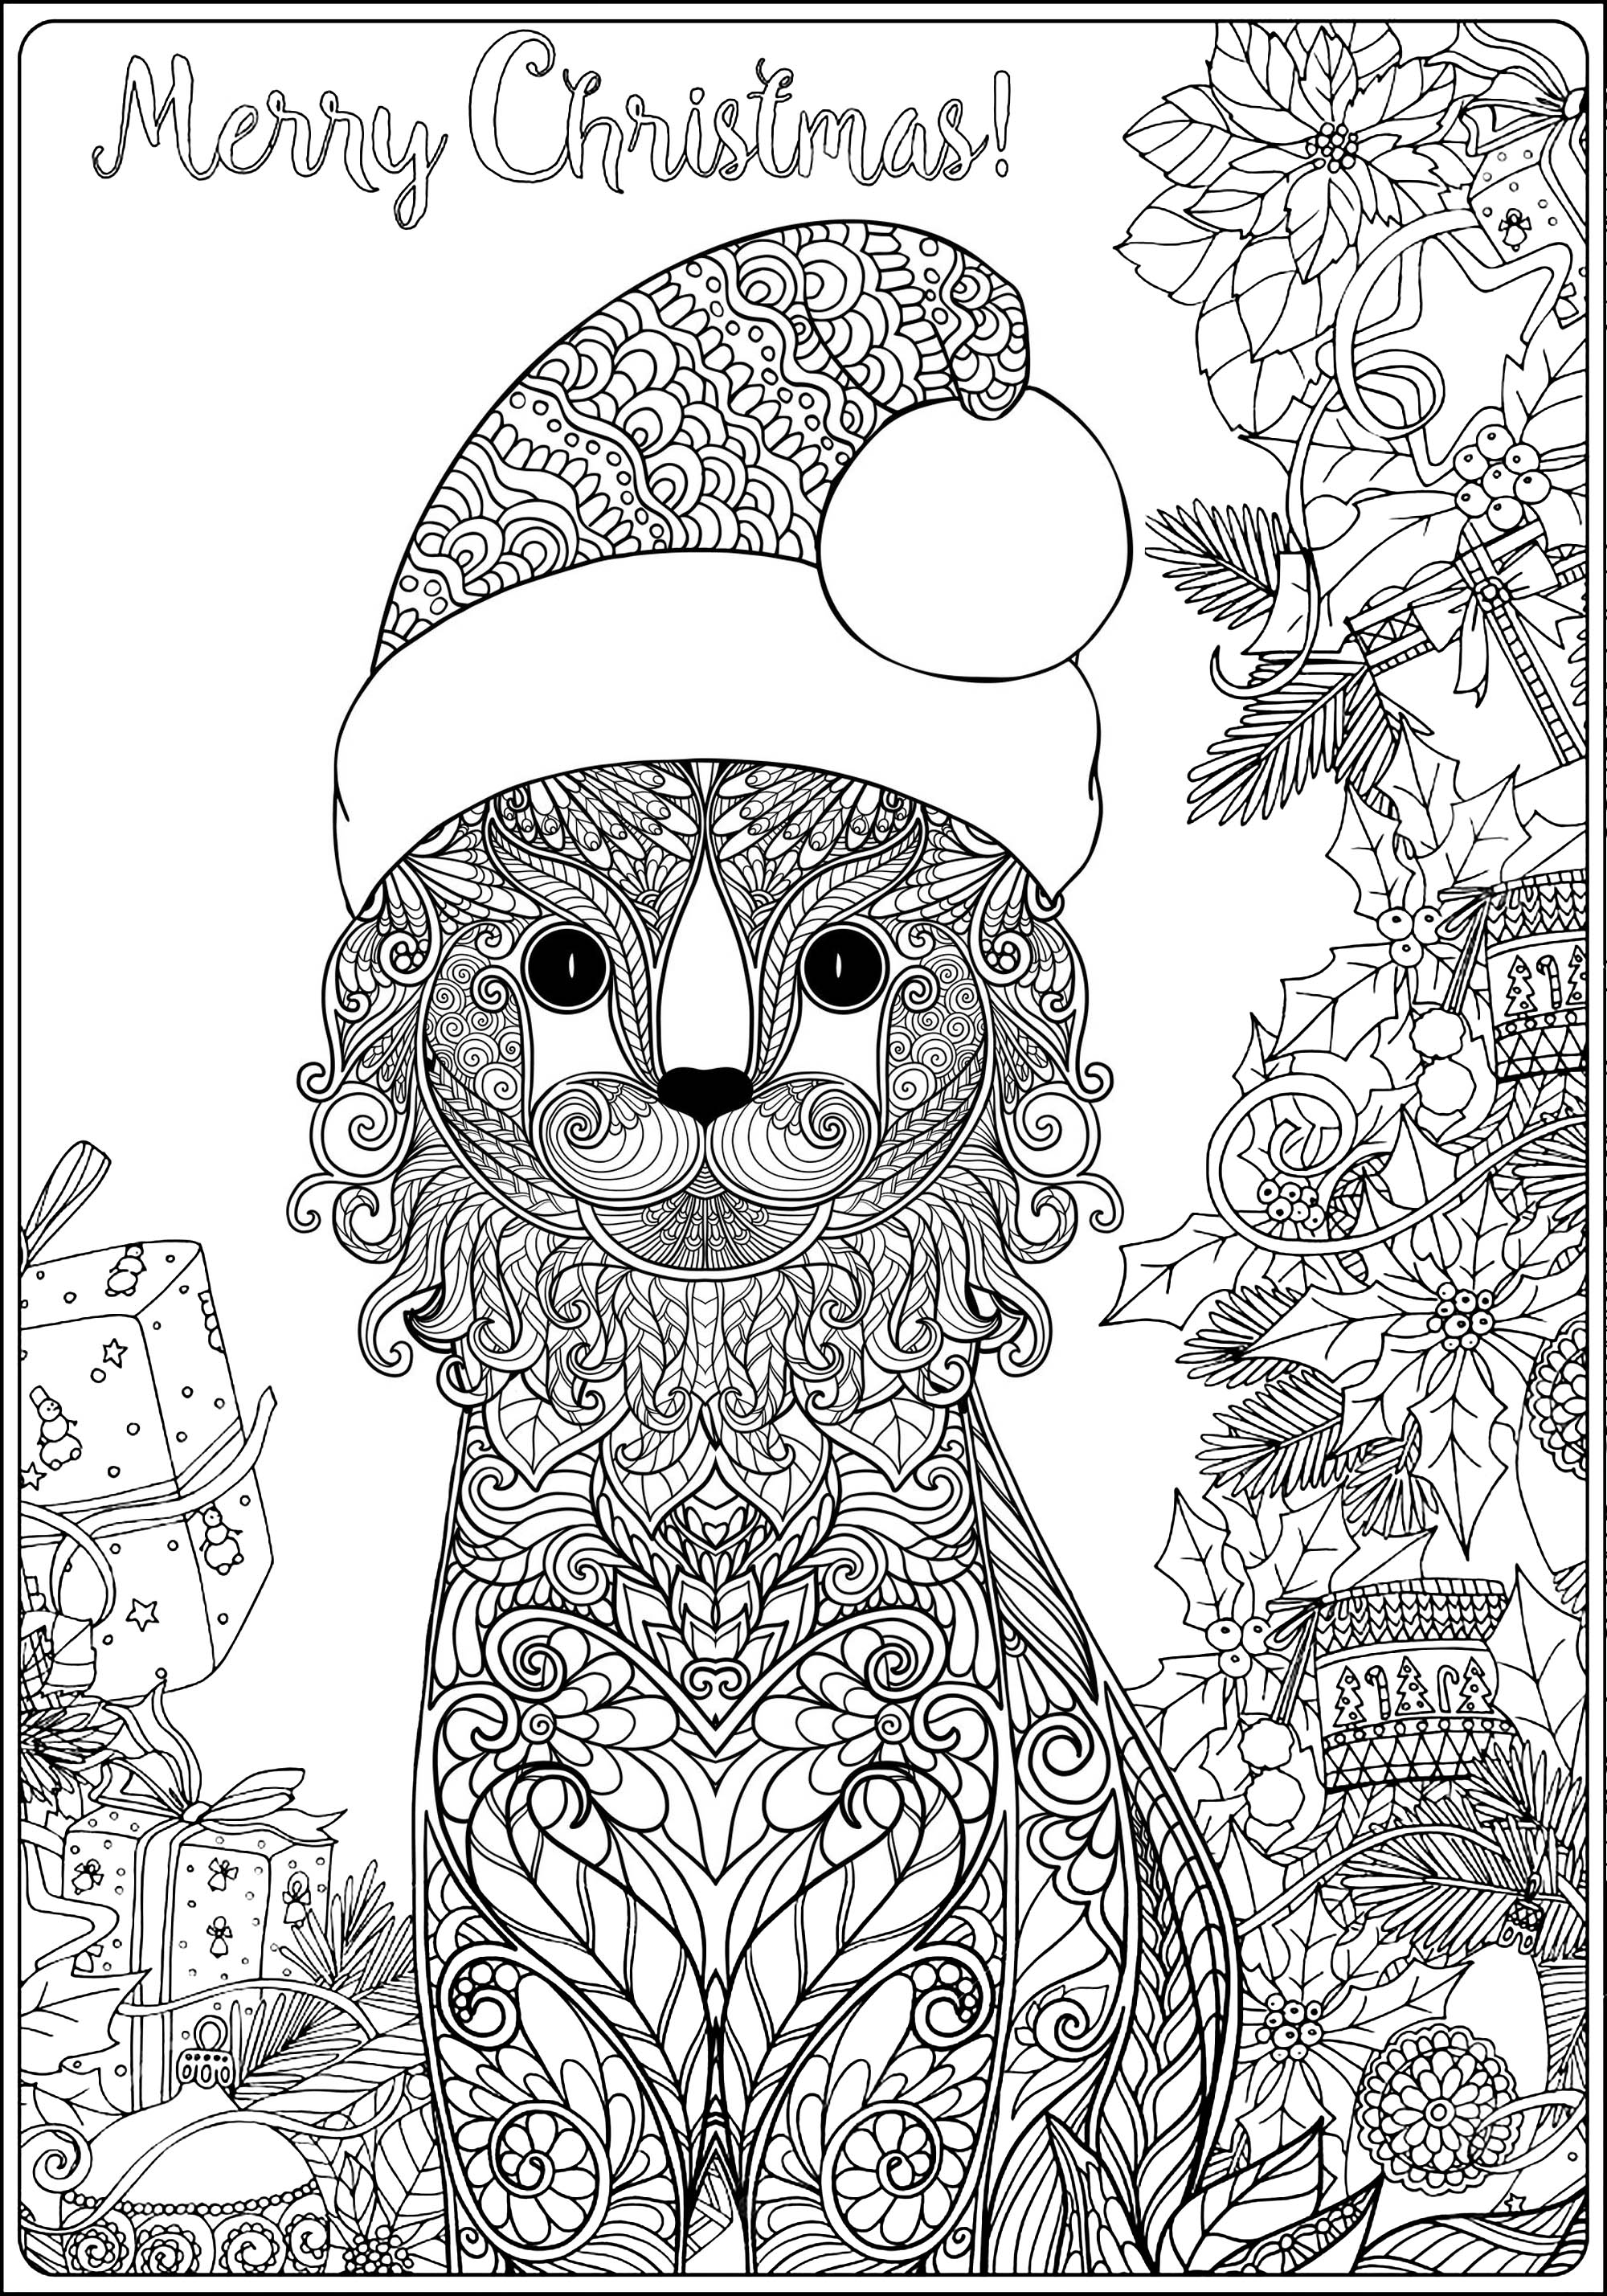 Disegni da Colorare per Adulti : Natale - 3, Fonte : 123rf   Artista : Elena Besedina